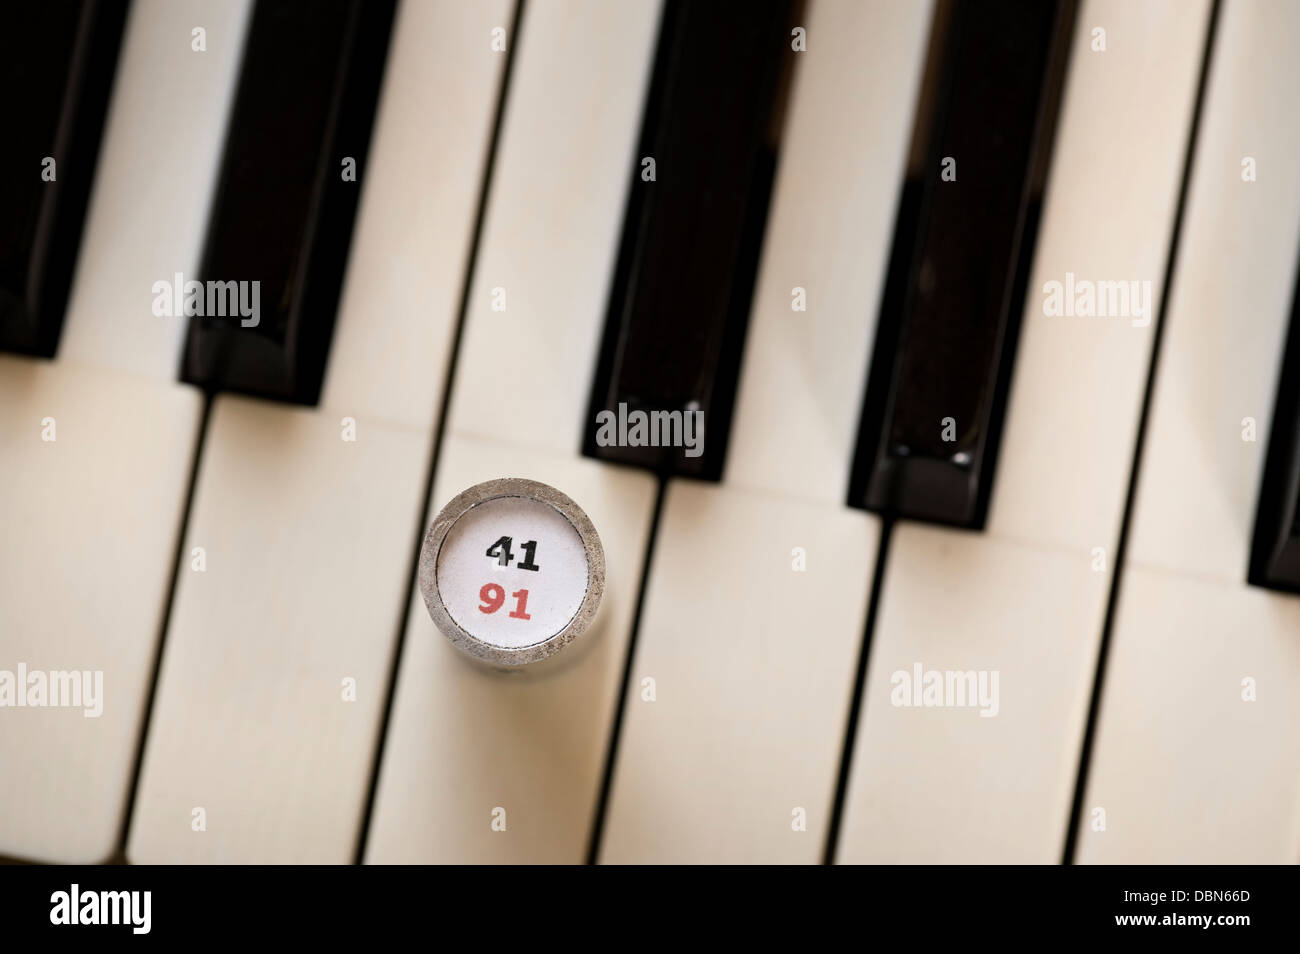 Key Keys Piano Stockfotos und -bilder Kaufen - Alamy